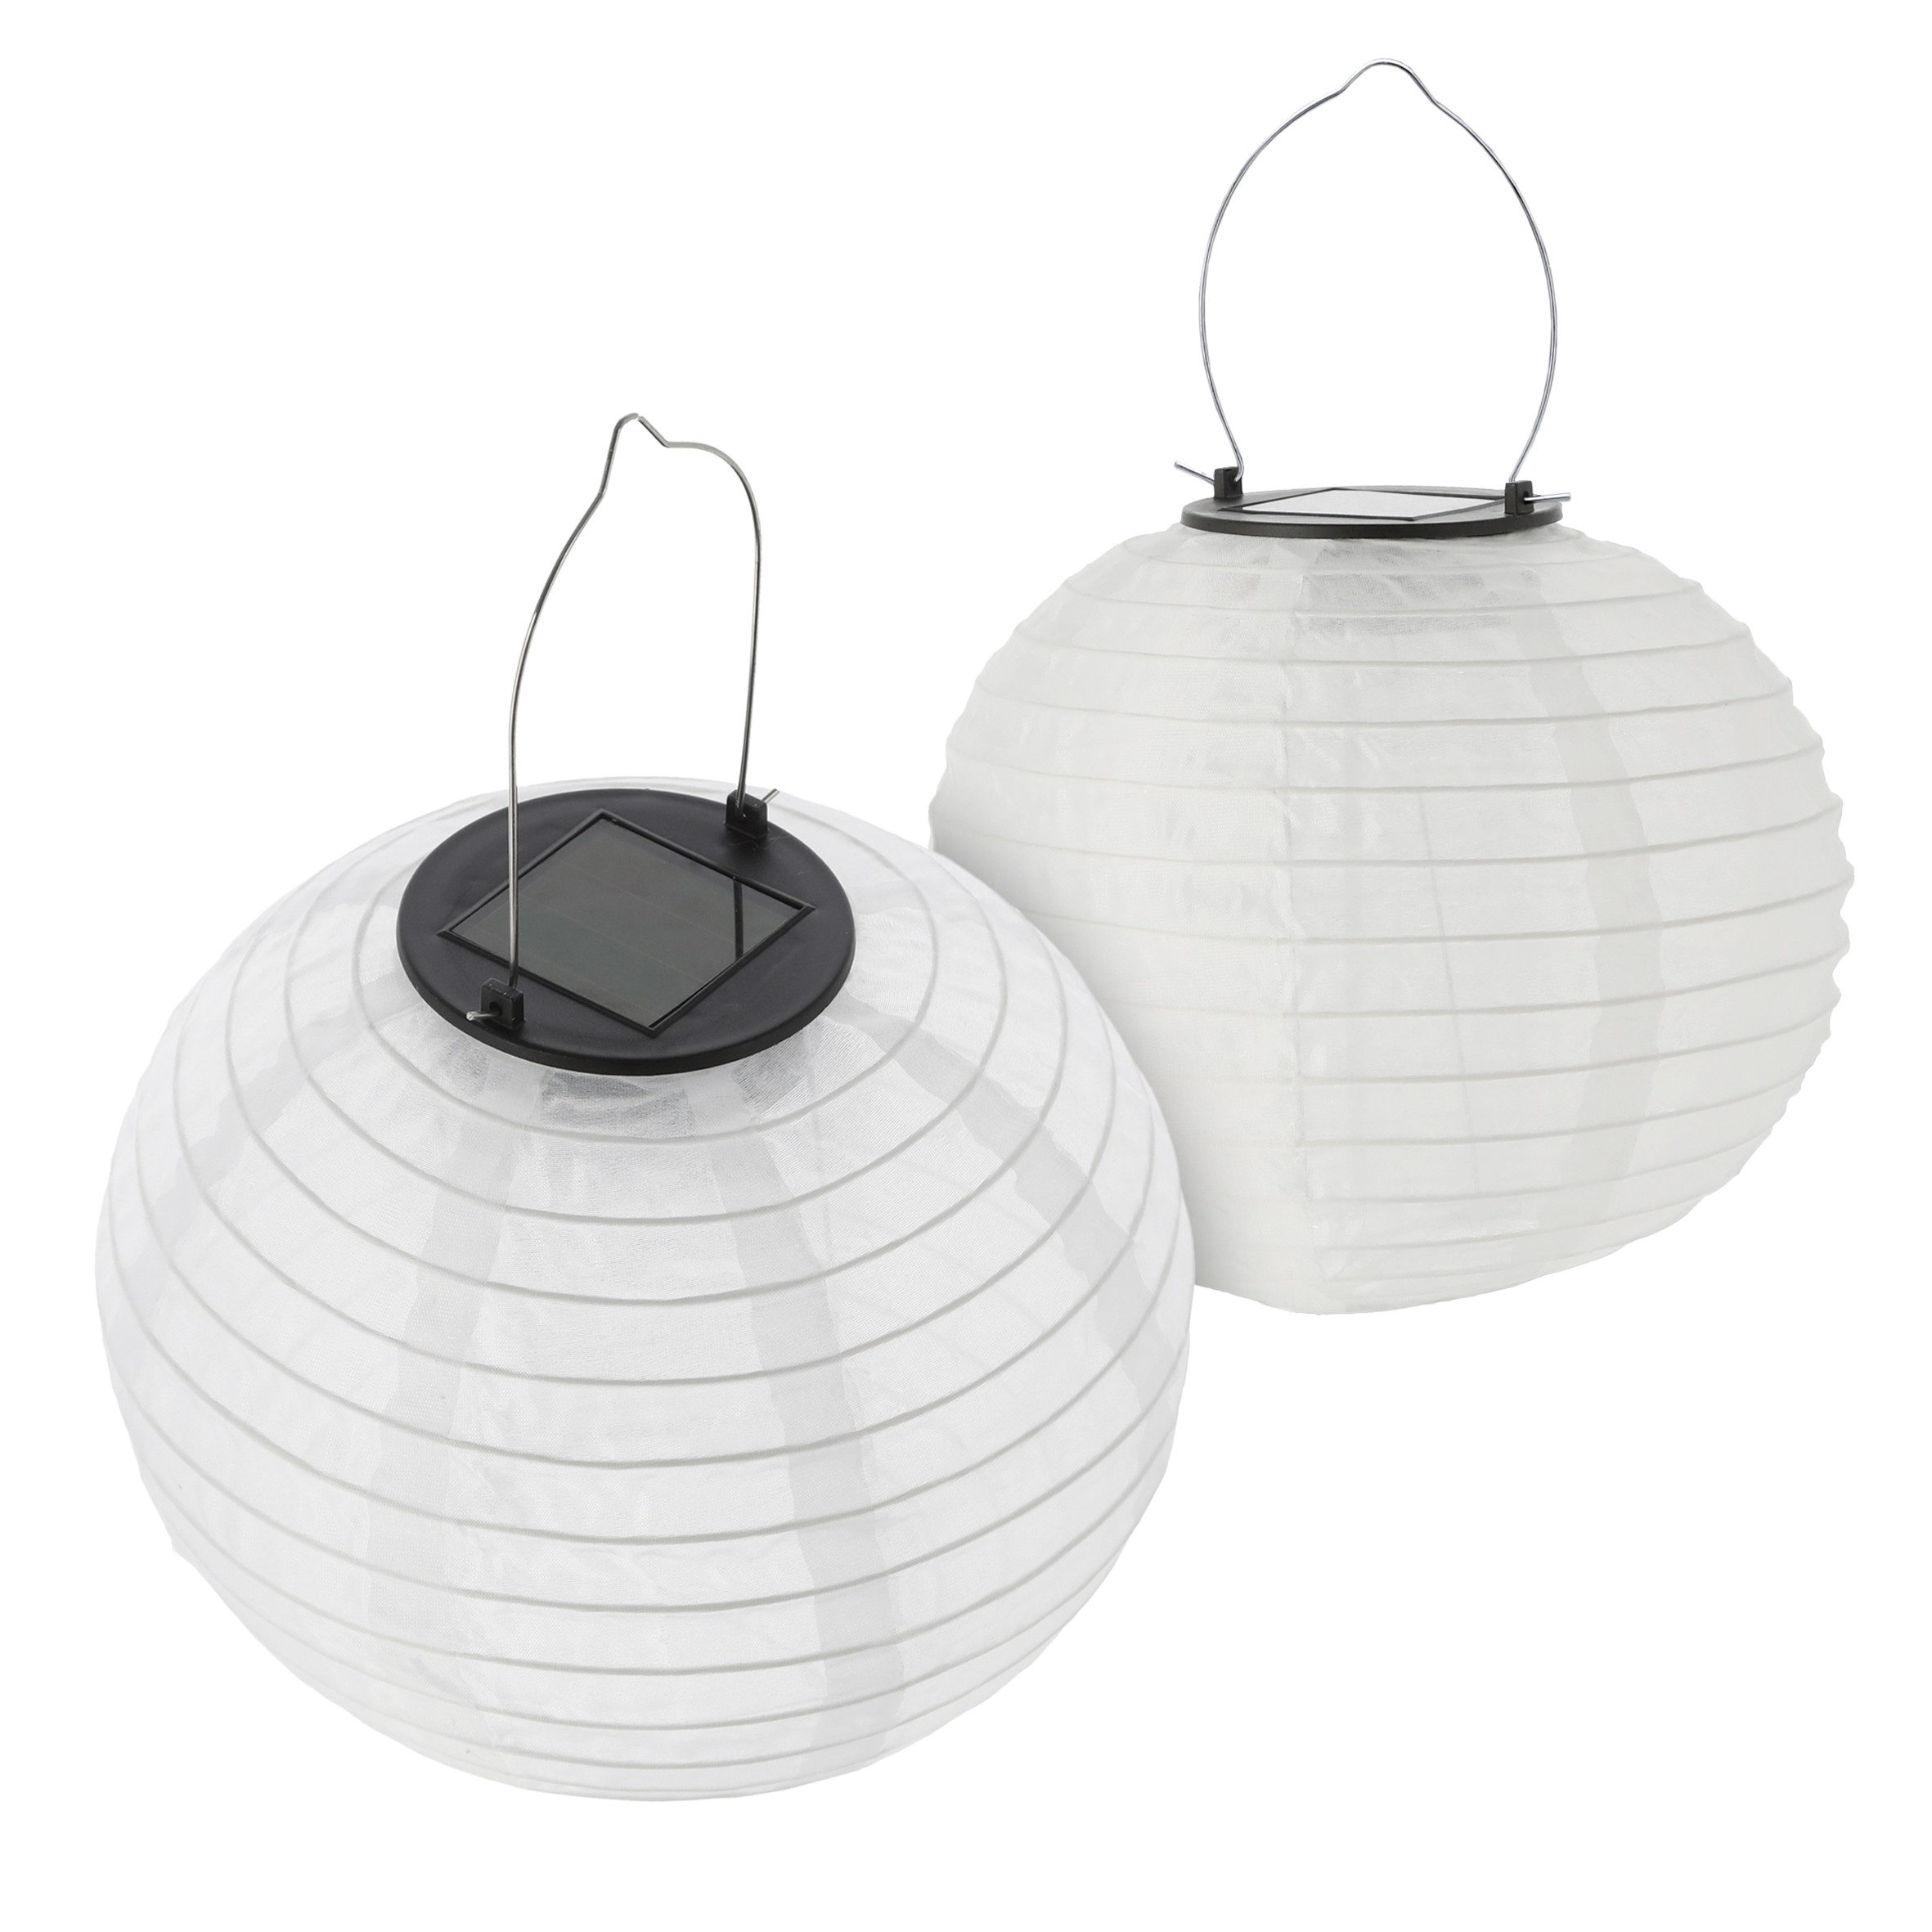 Spetebo LED Gartenleuchte LED Solar Lampion aus Nylon - Set, Einschaltautomatik, LED, warm weiß, Garten Deko Beleuchtung warm weiß